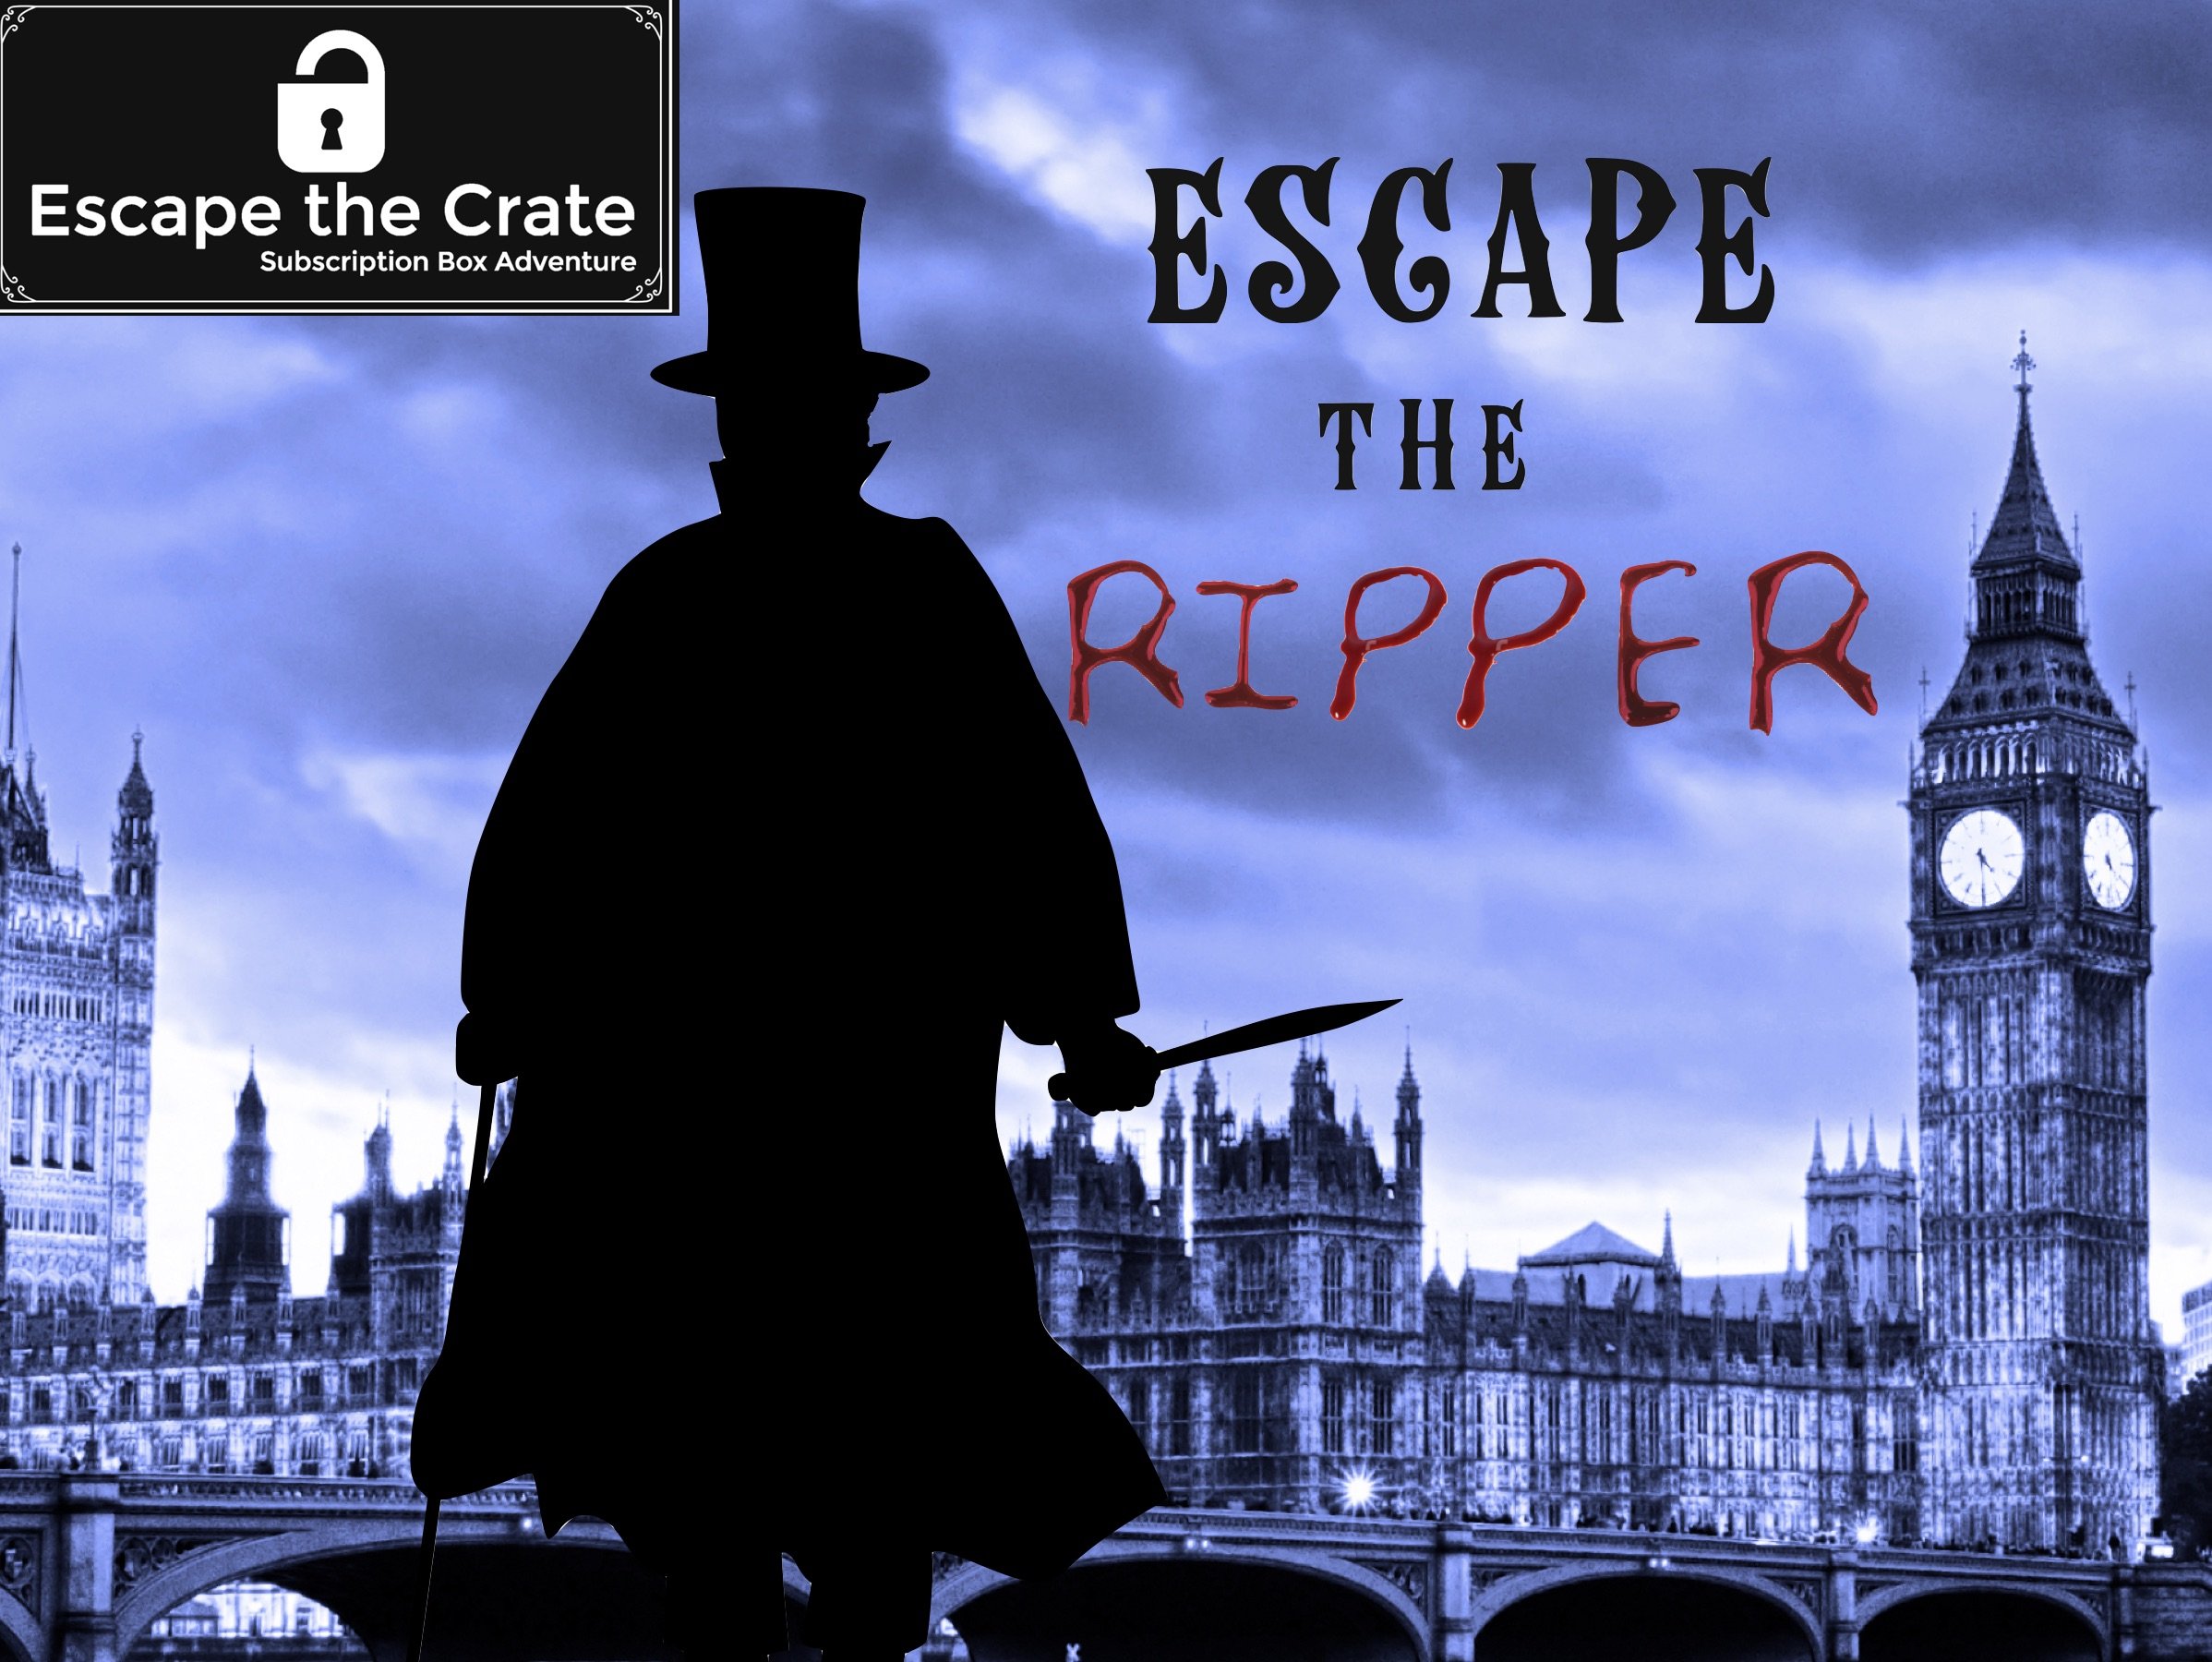 Game 23 - Escape the Ripper